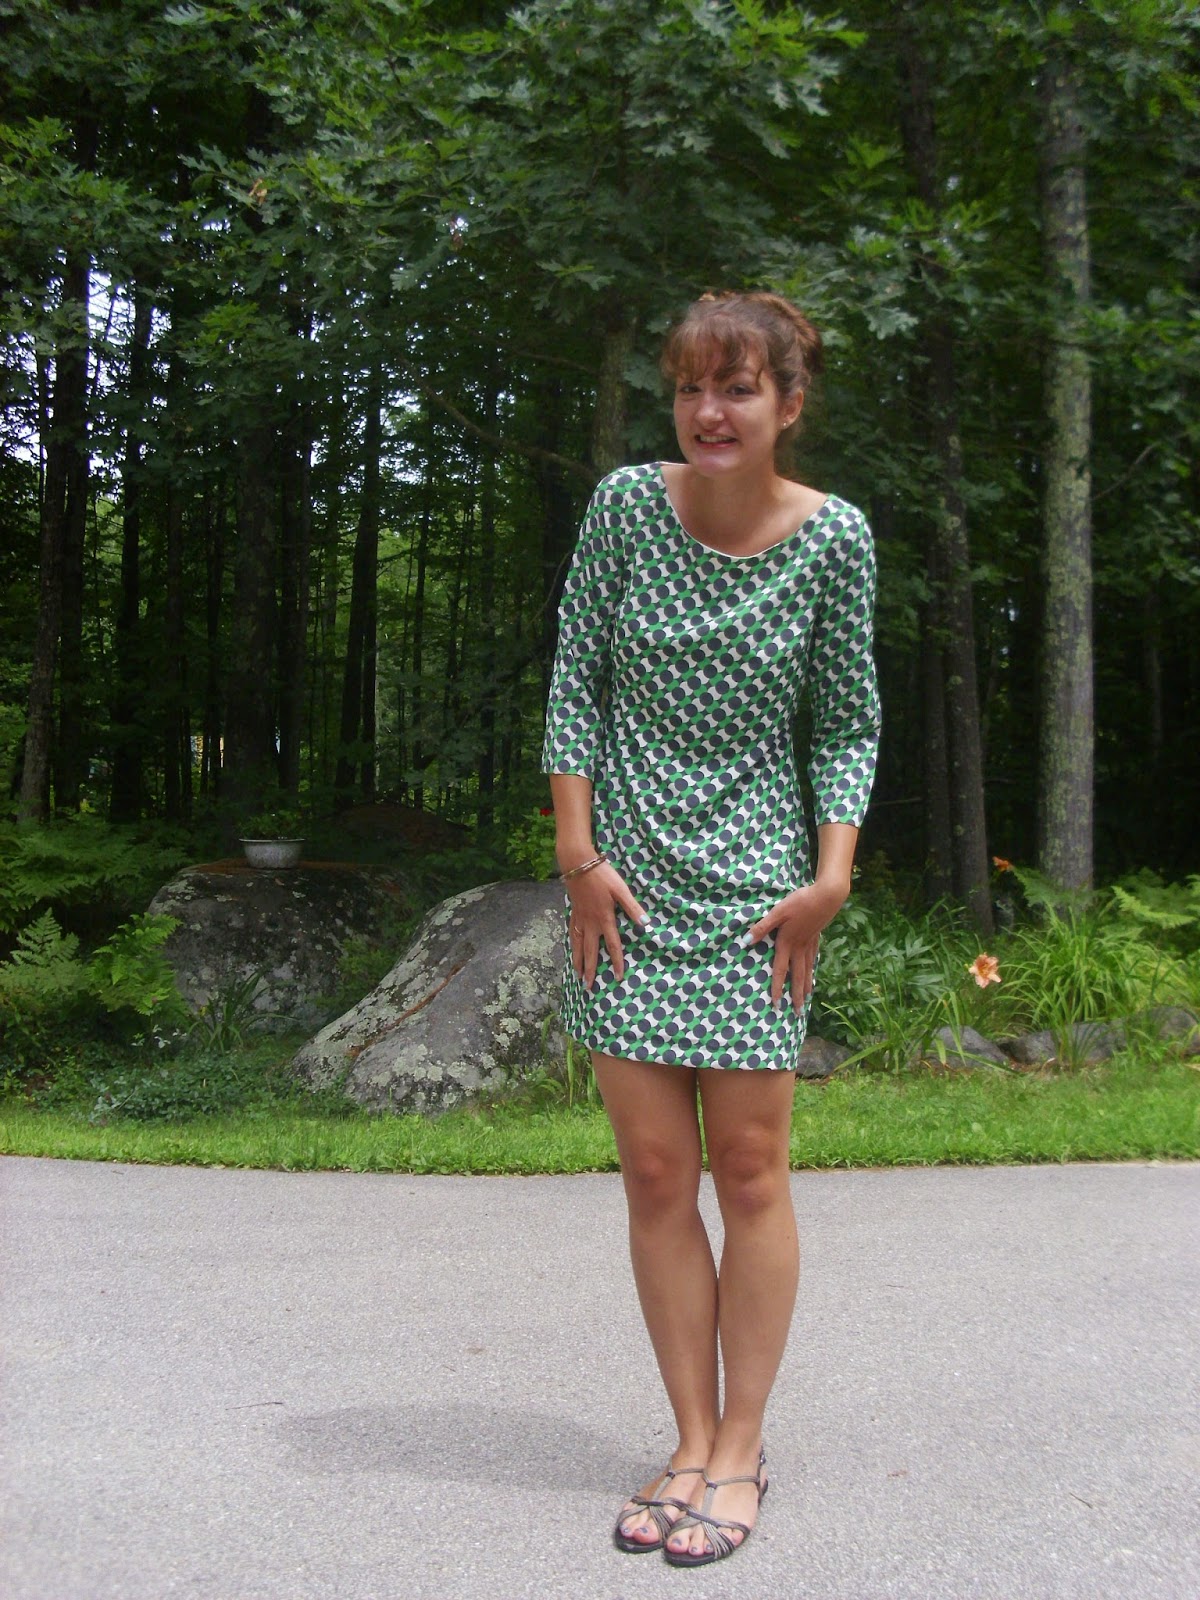 Young Yankee Lady: 60's shift dress mod bouffant bun hair style blogger 